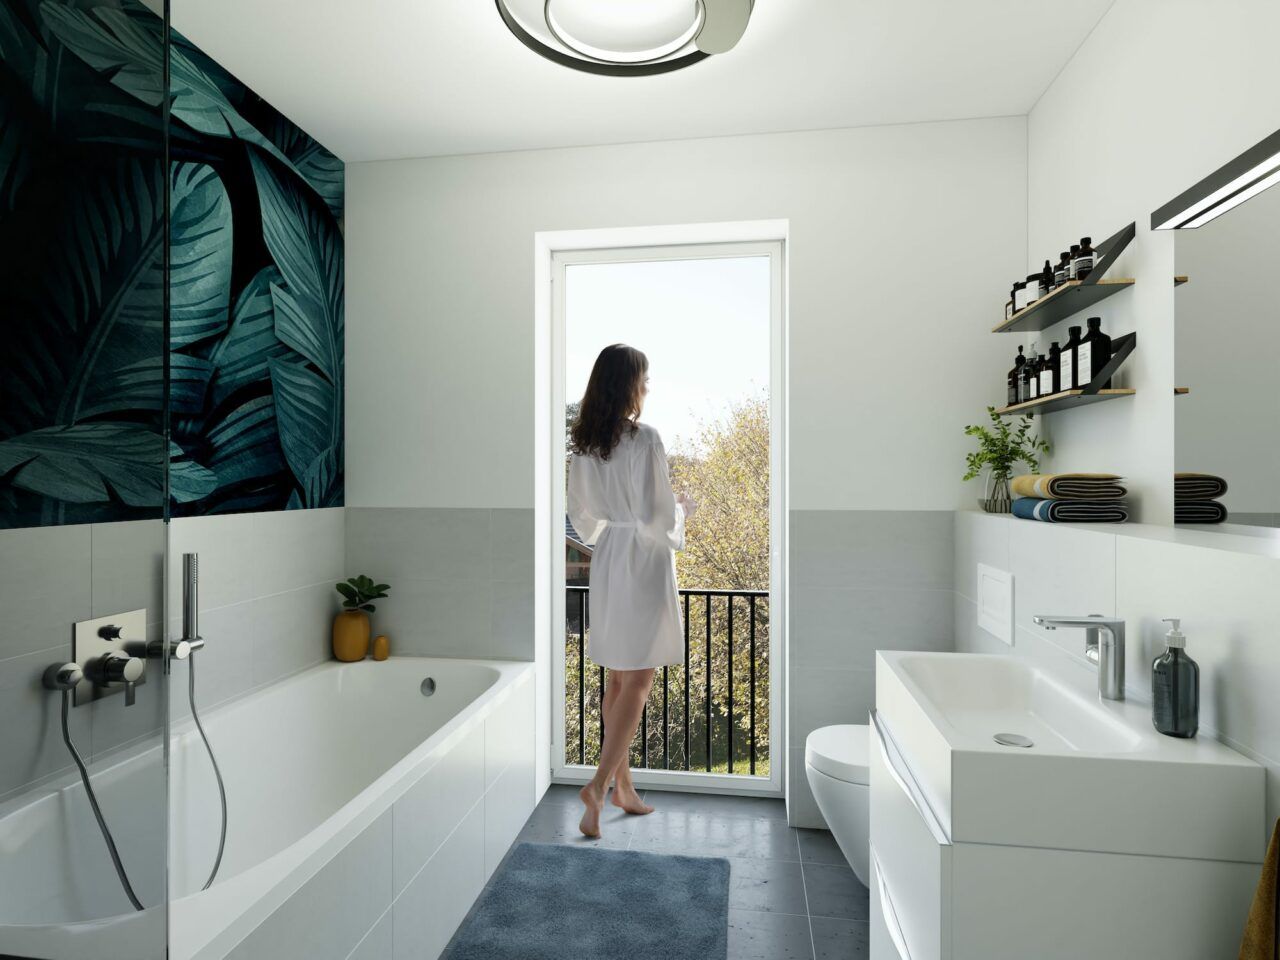 ALTE DORFSTRASSE CROSSEN - Energieeffiziente Einfamilienhäuser in ländlicher Naturidylle - Badezimmer